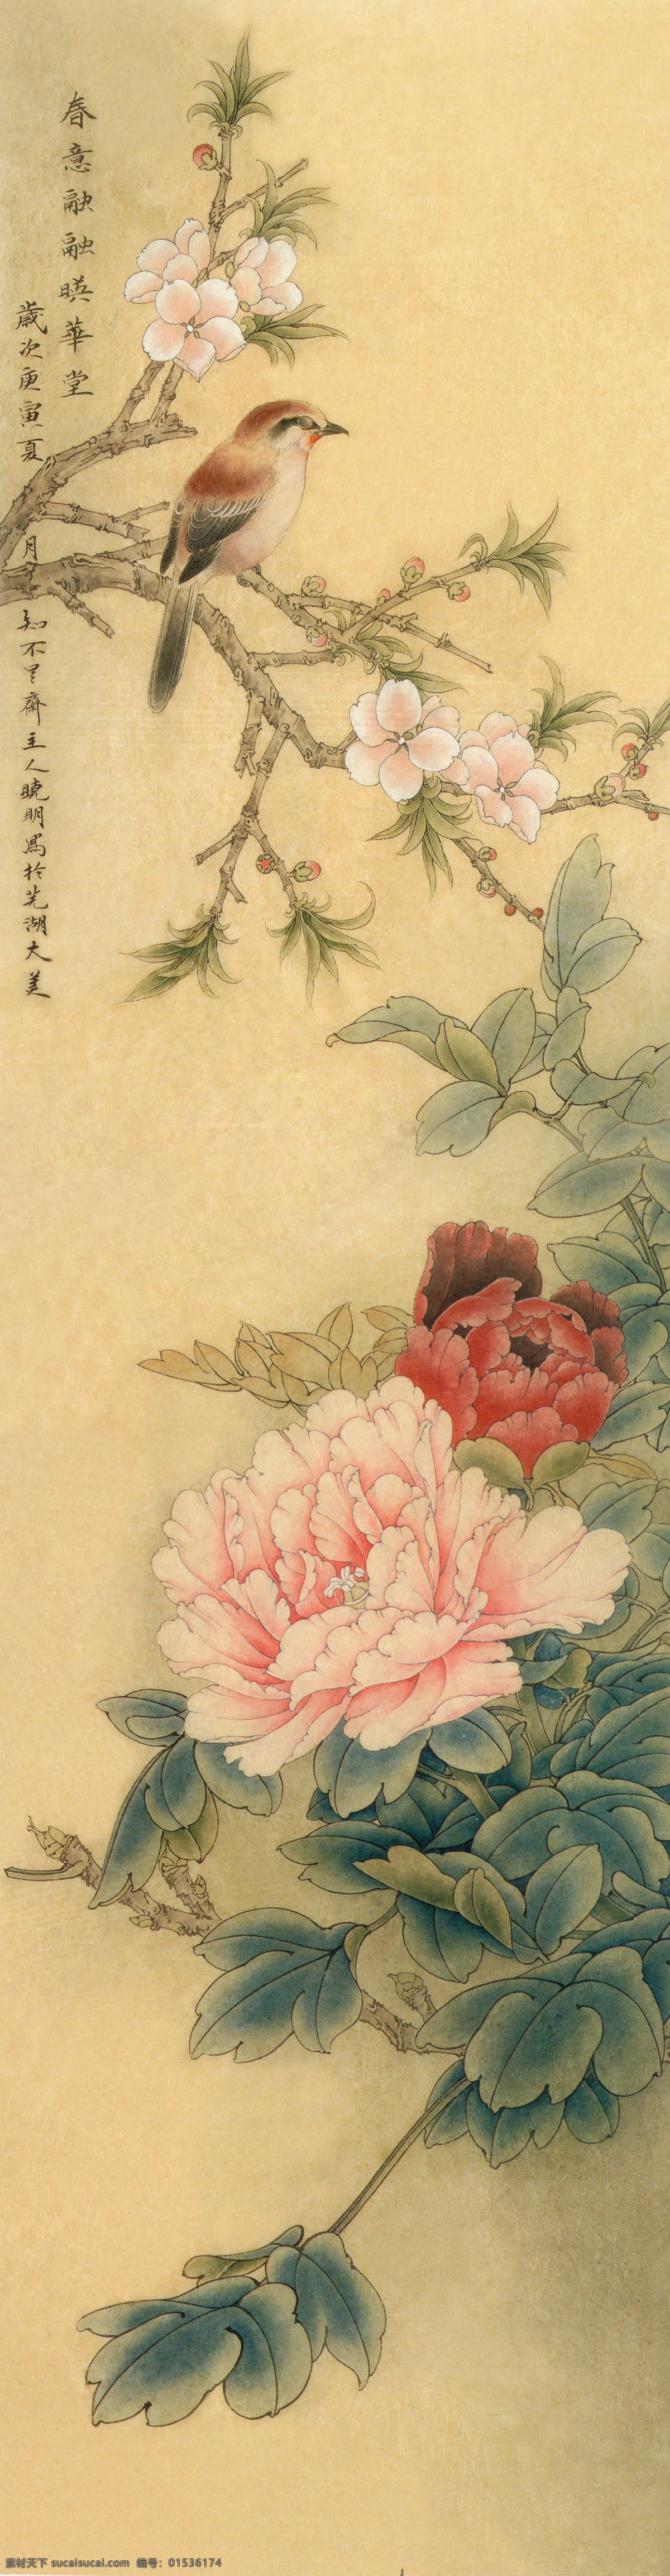 高清 中式 工笔 花鸟 绘画 牡丹 国画 精品国画 文化艺术 绘画书法